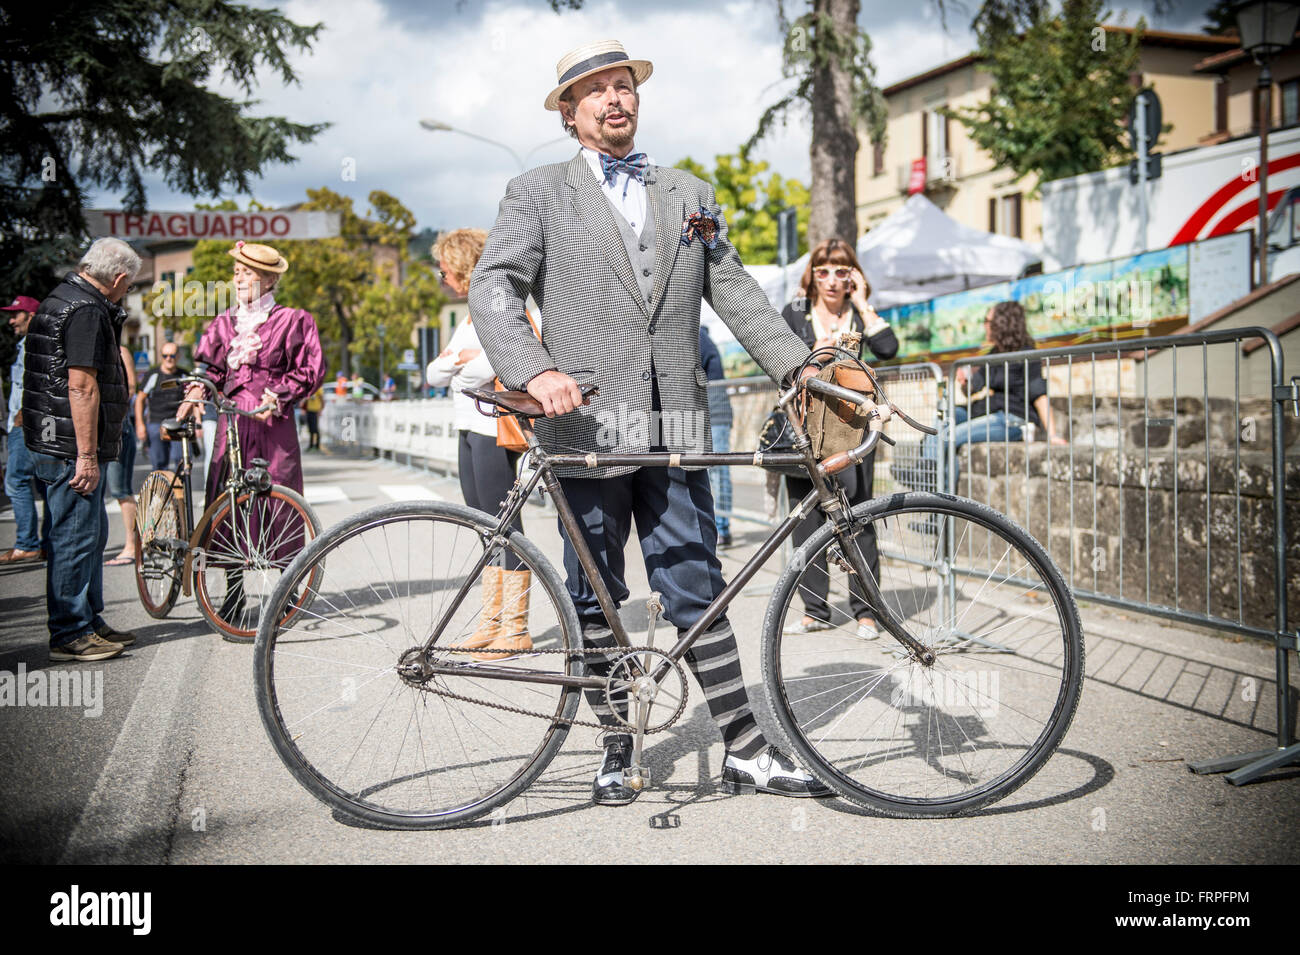 Un homme élégant habillé de style vintage. L'Eroica est une épreuve cycliste qui se déroule depuis 1997 dans la province de Sienne avec les routes qui se produisent essentiellement sur des chemins de terre avec des vélos vintage. Habituellement, il a tenu le premier dimanche d'octobre. Banque D'Images